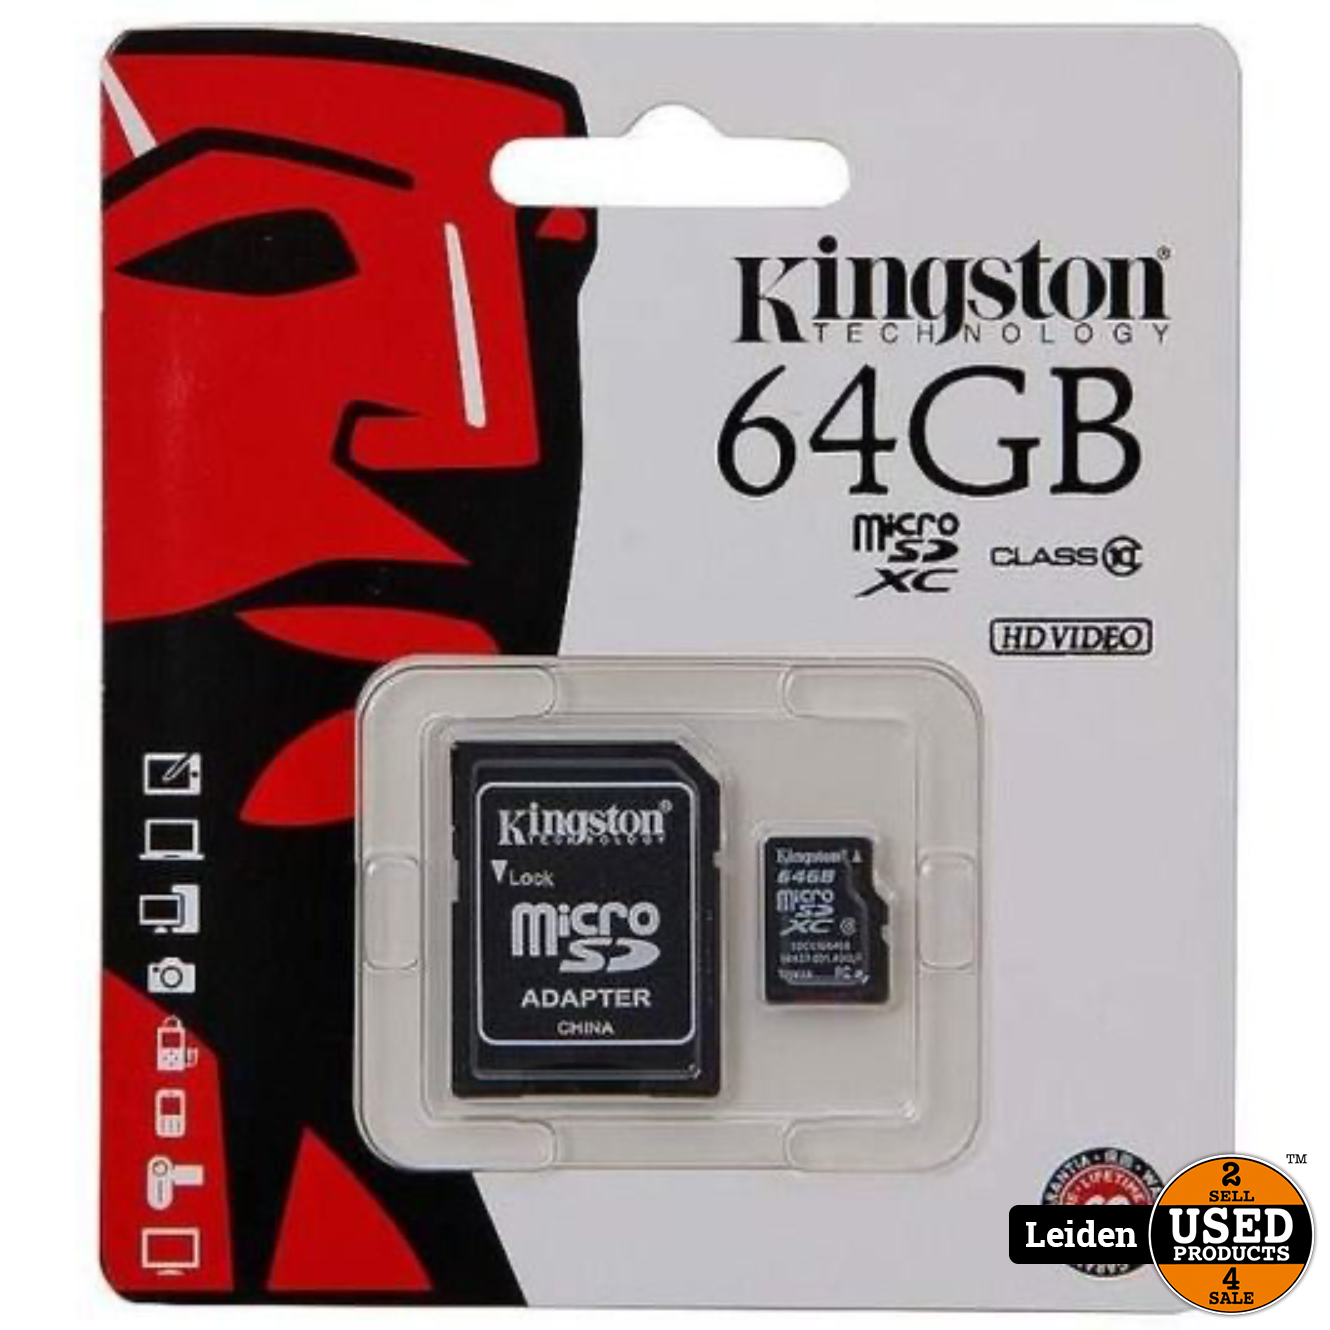 Kingston Micro SD Kaart 64GB met SD Adapter Zwart - Used Leiden